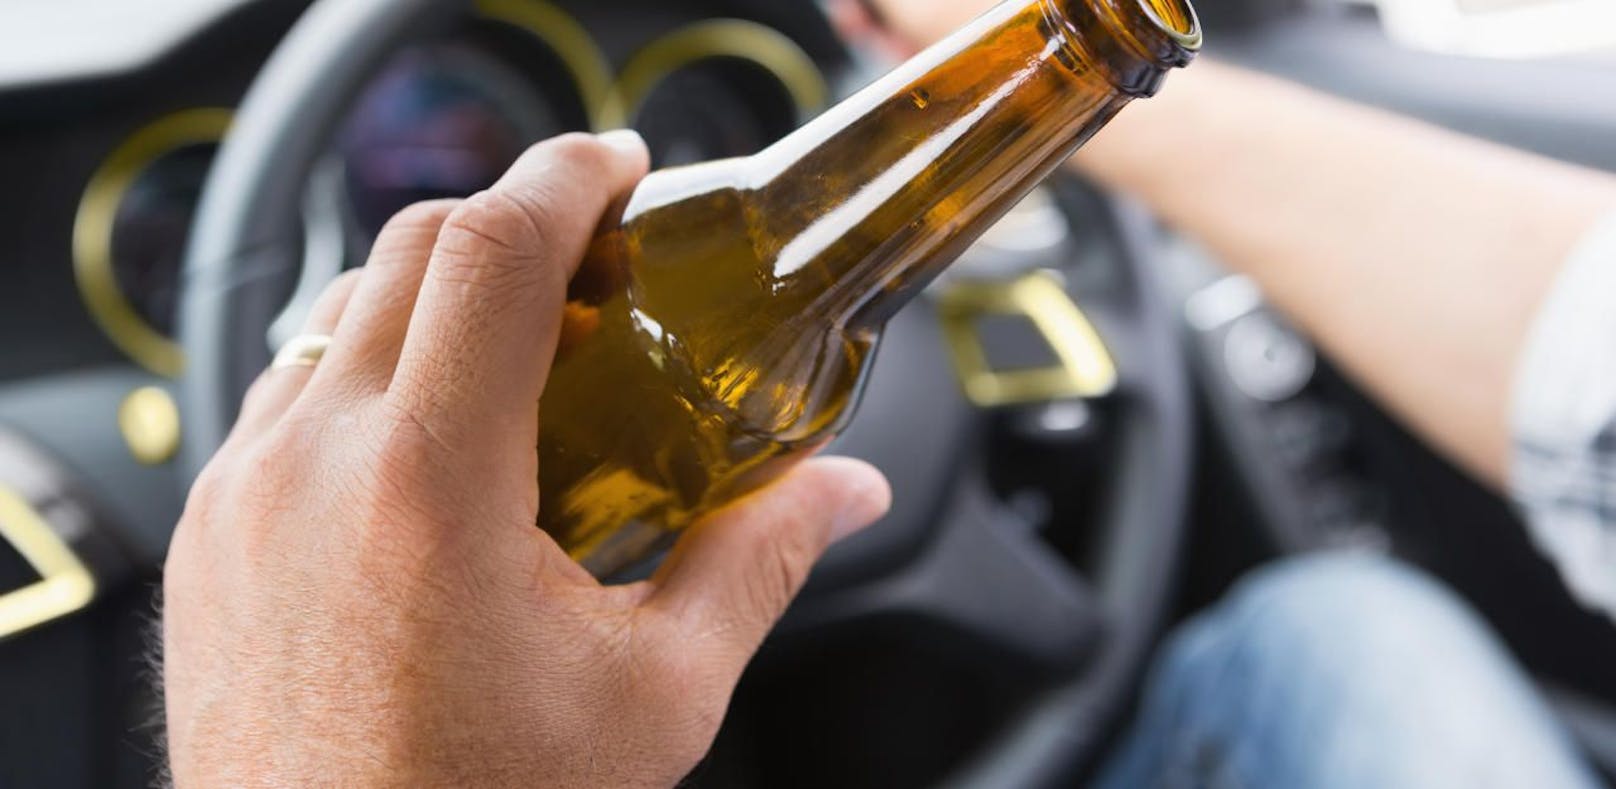 Von Juli bis September gab es knapp 1.000 Alkoholunfälle im Straßenverkehr.